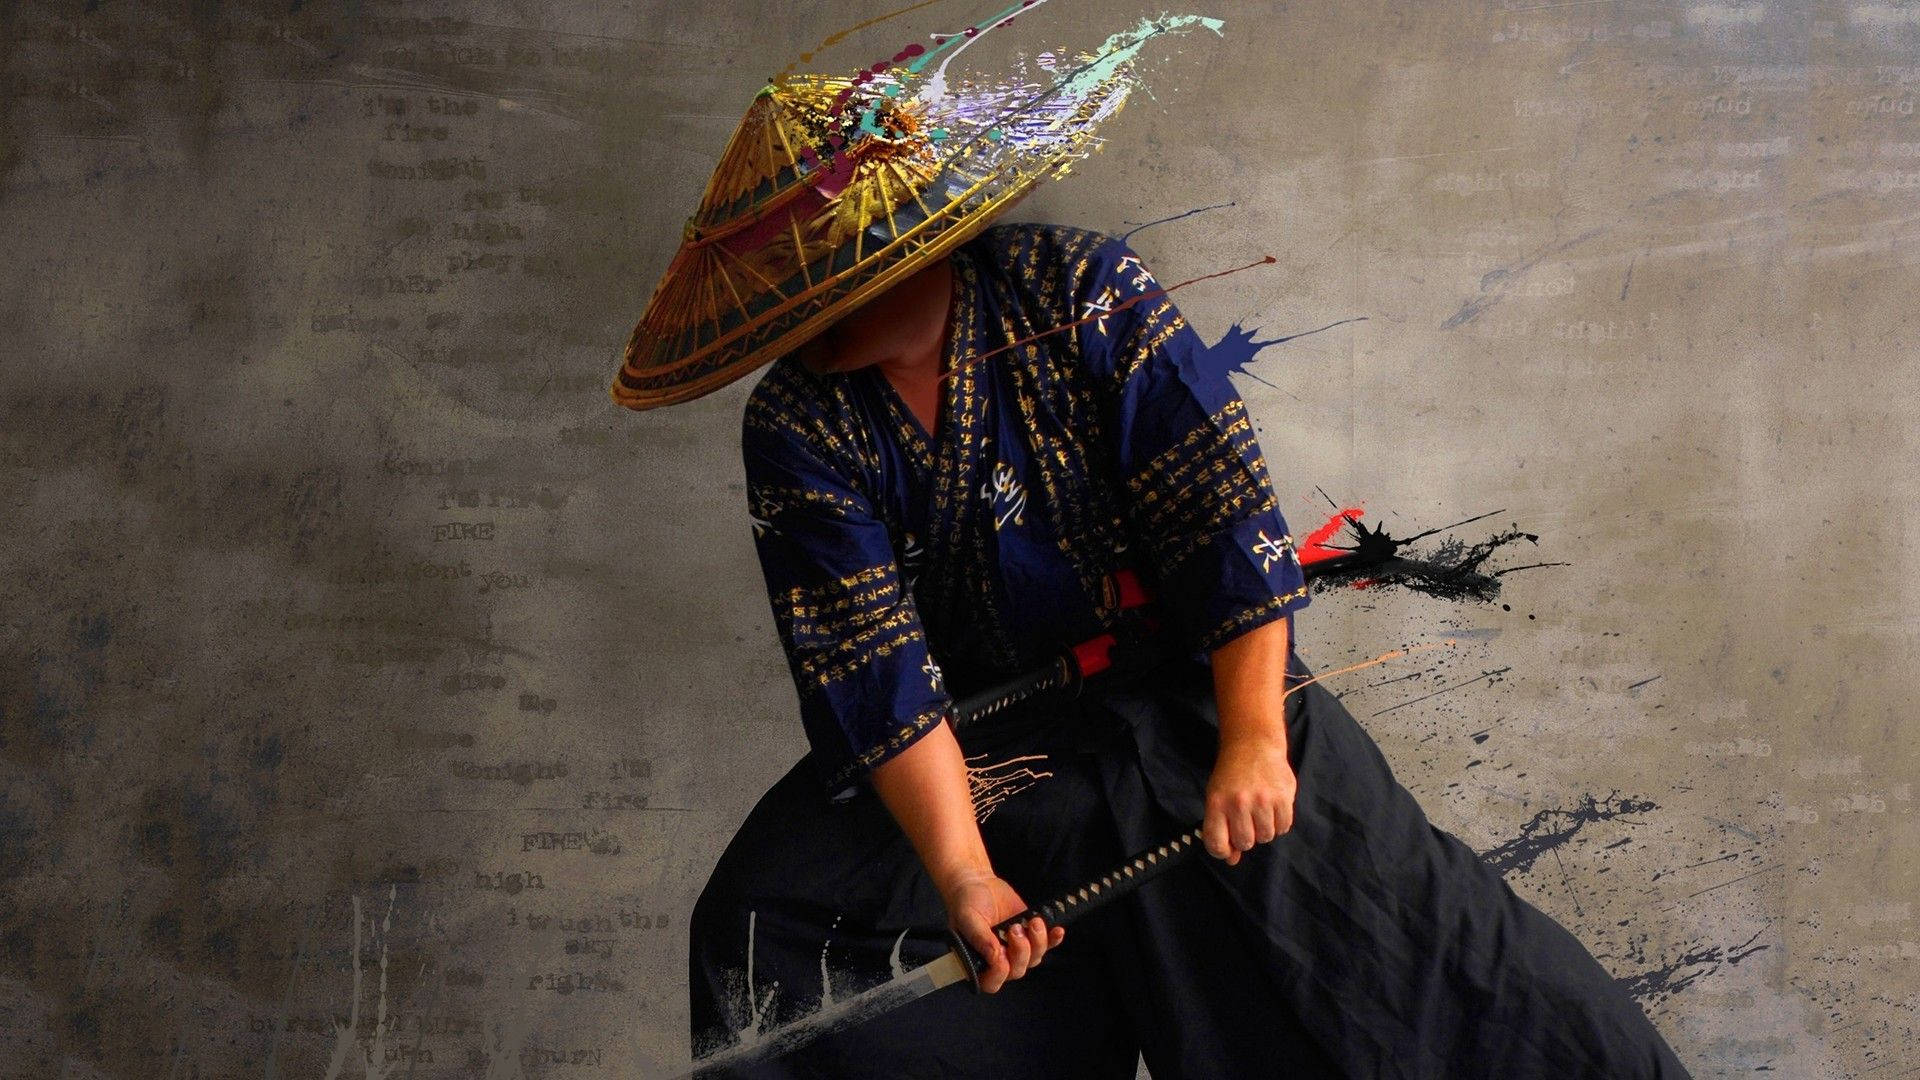 Et farverigt samurai-krigere i en smuk kunstværk. Wallpaper